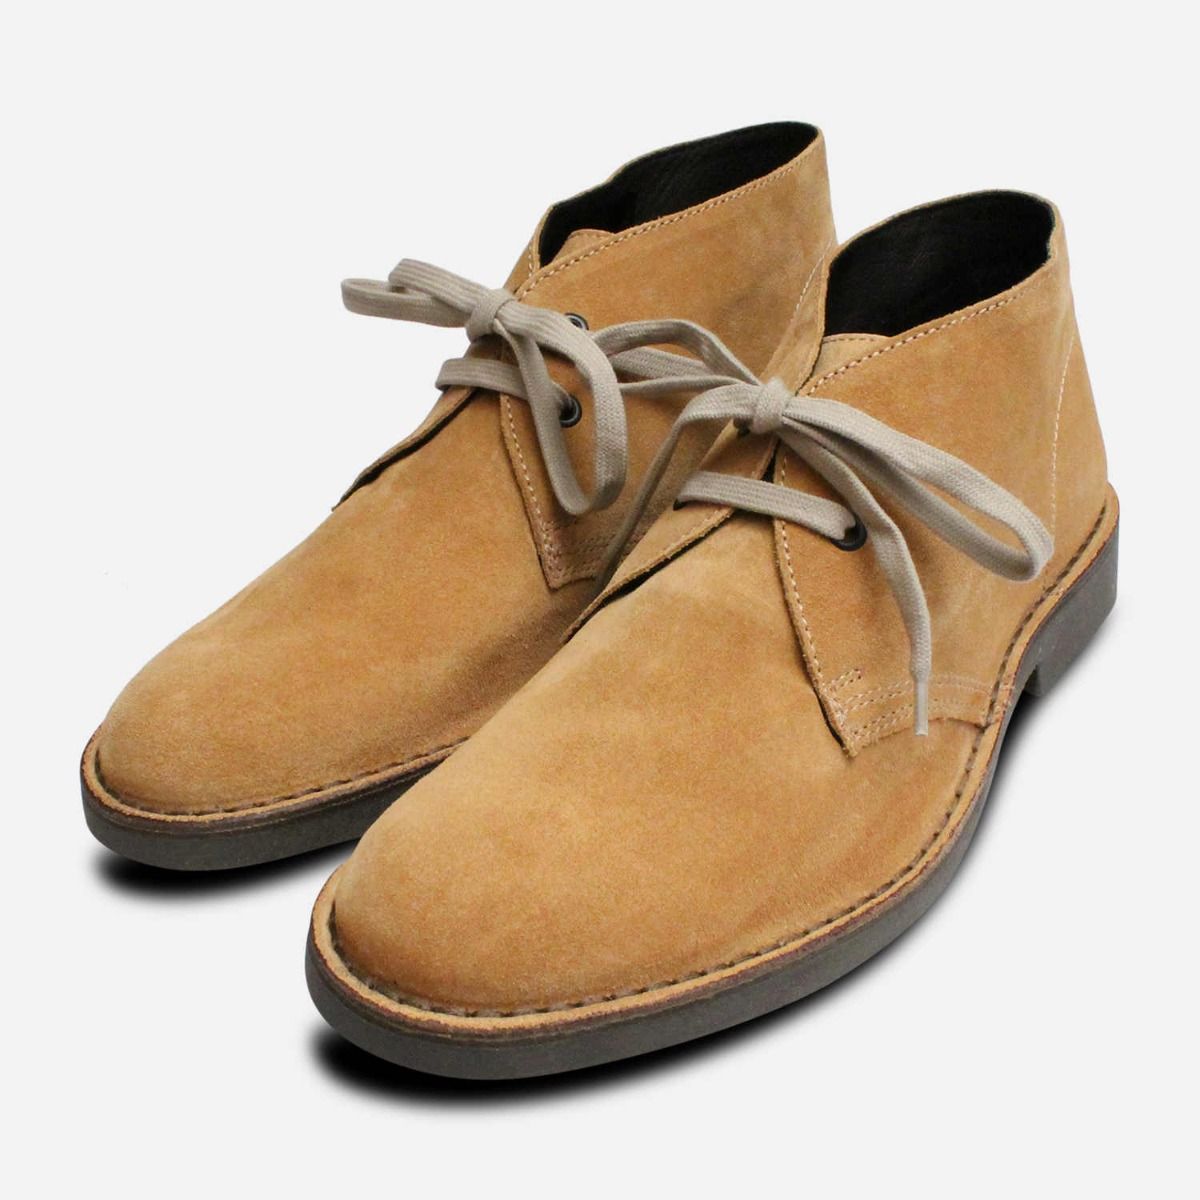 camel shoe boots